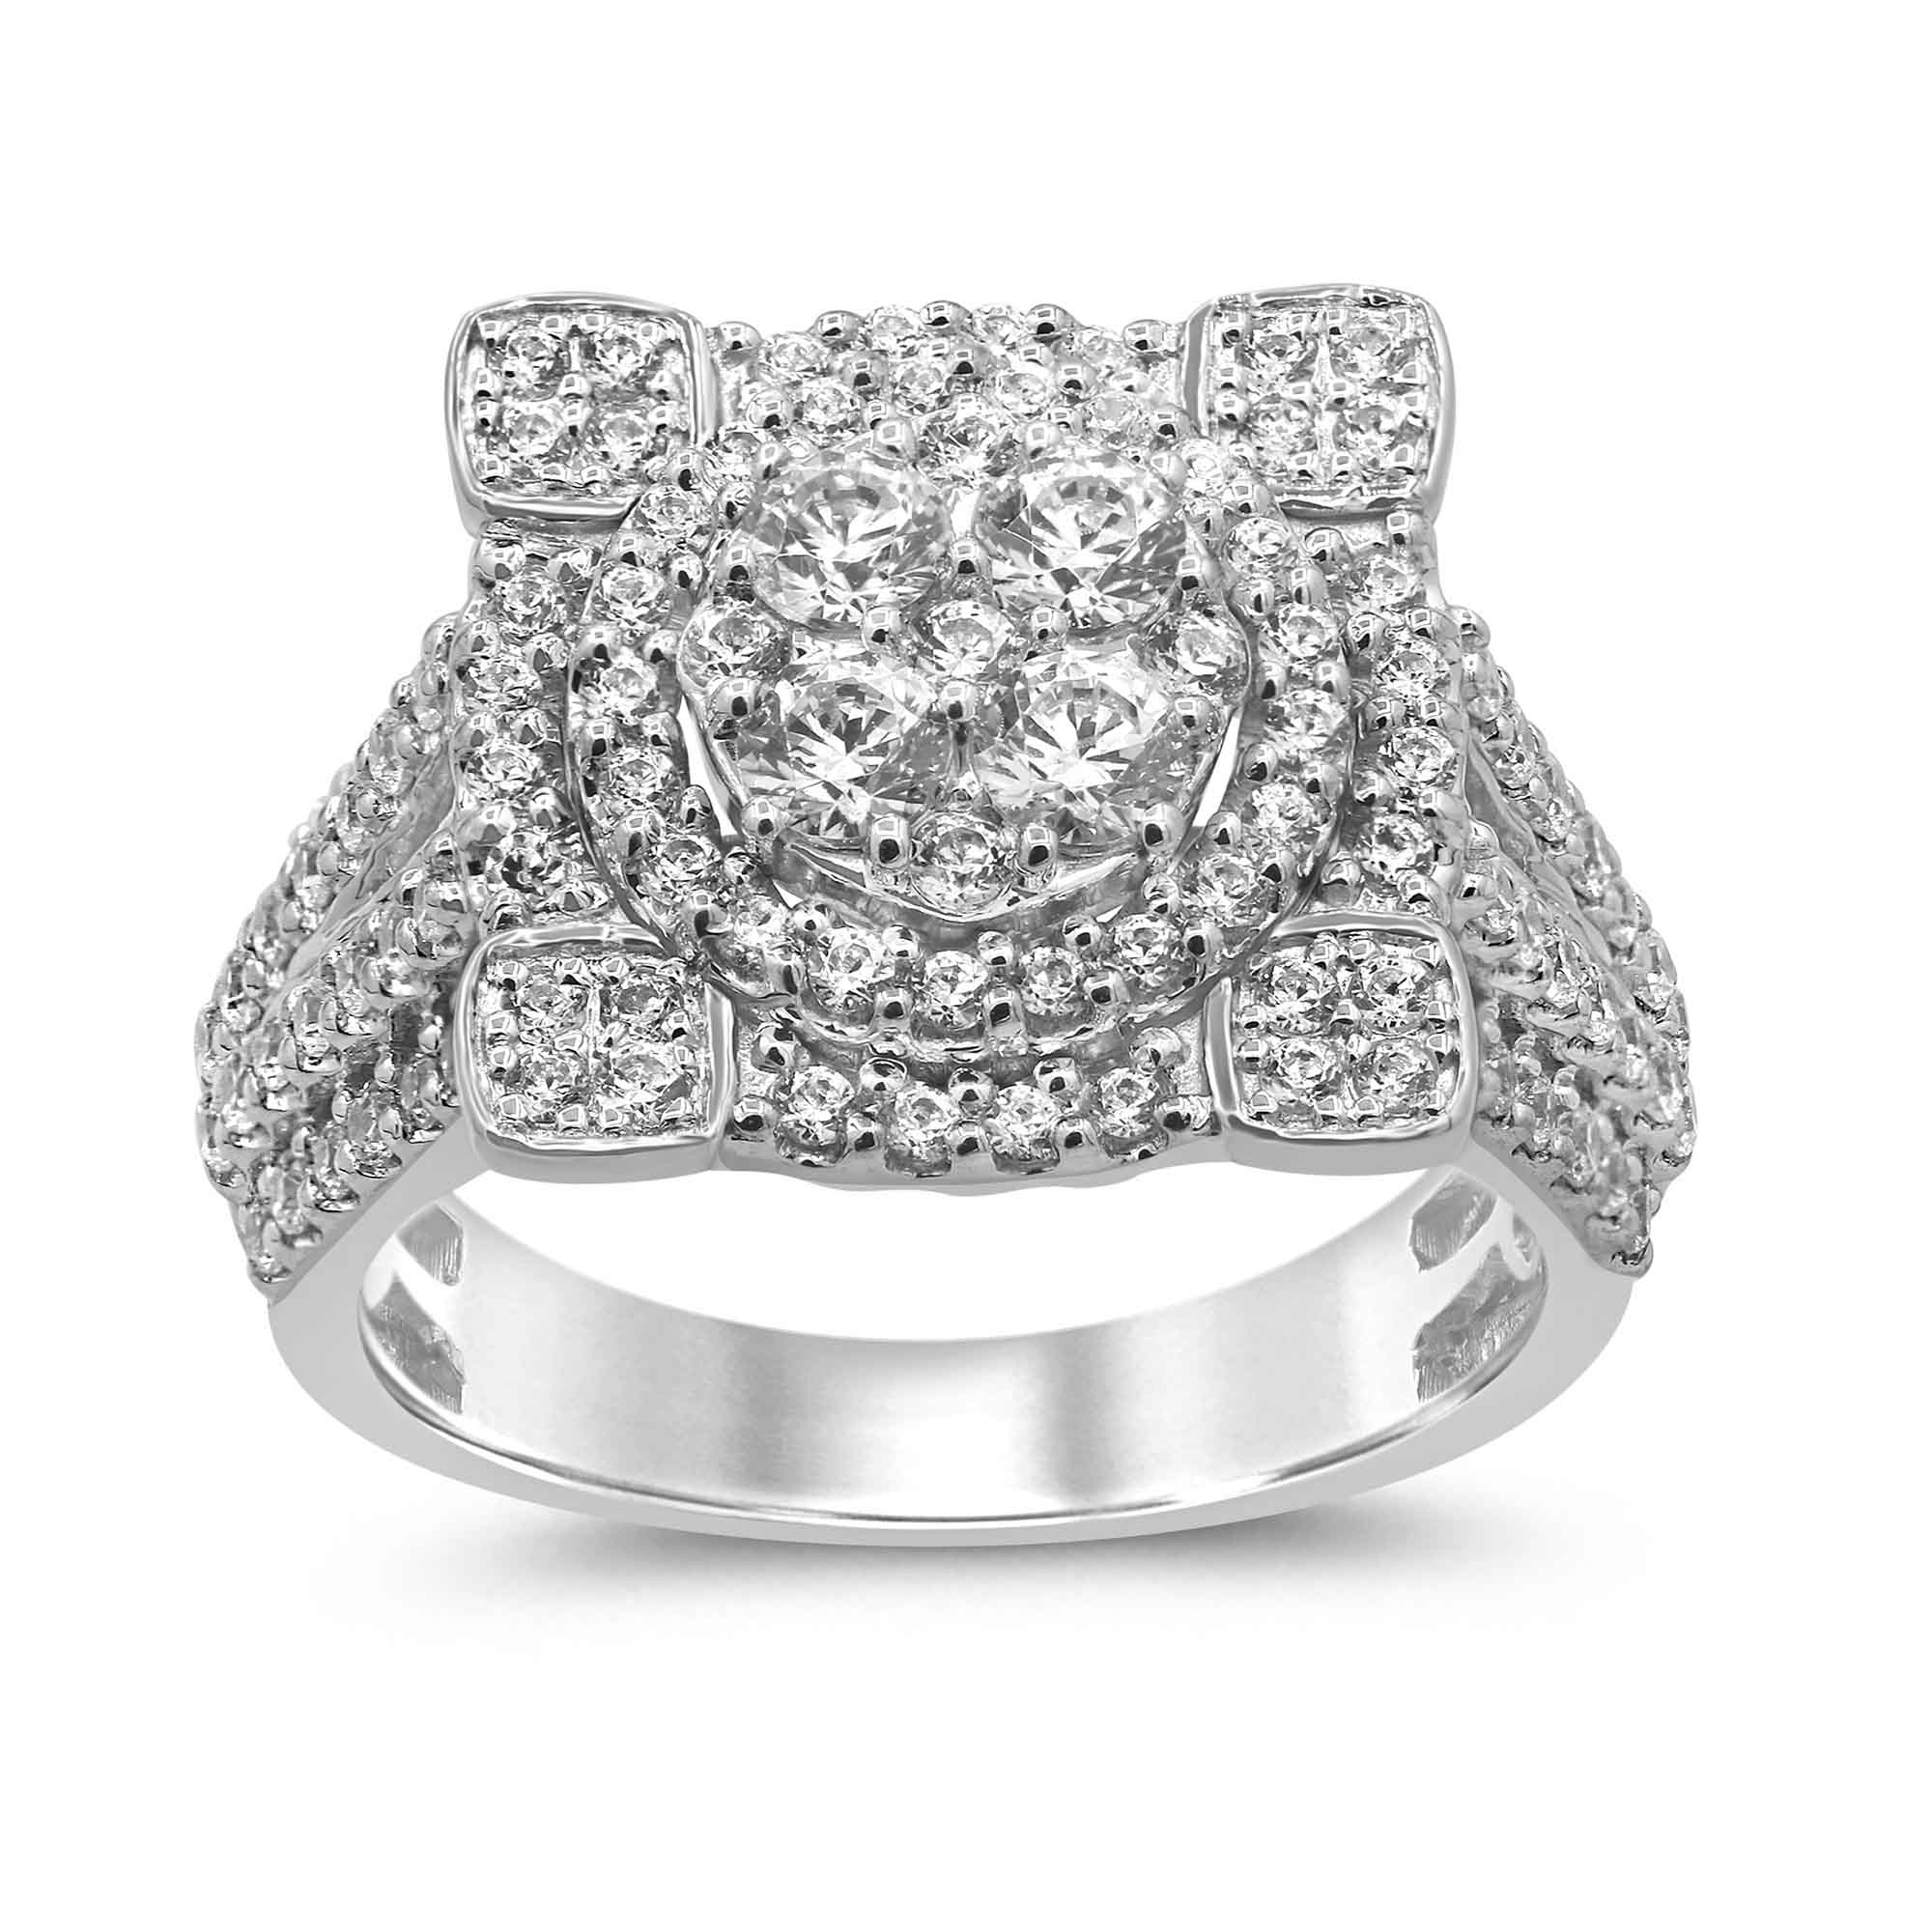 10KT White Gold 1.50 Carat Designer Ladies Ring-0229917-WG